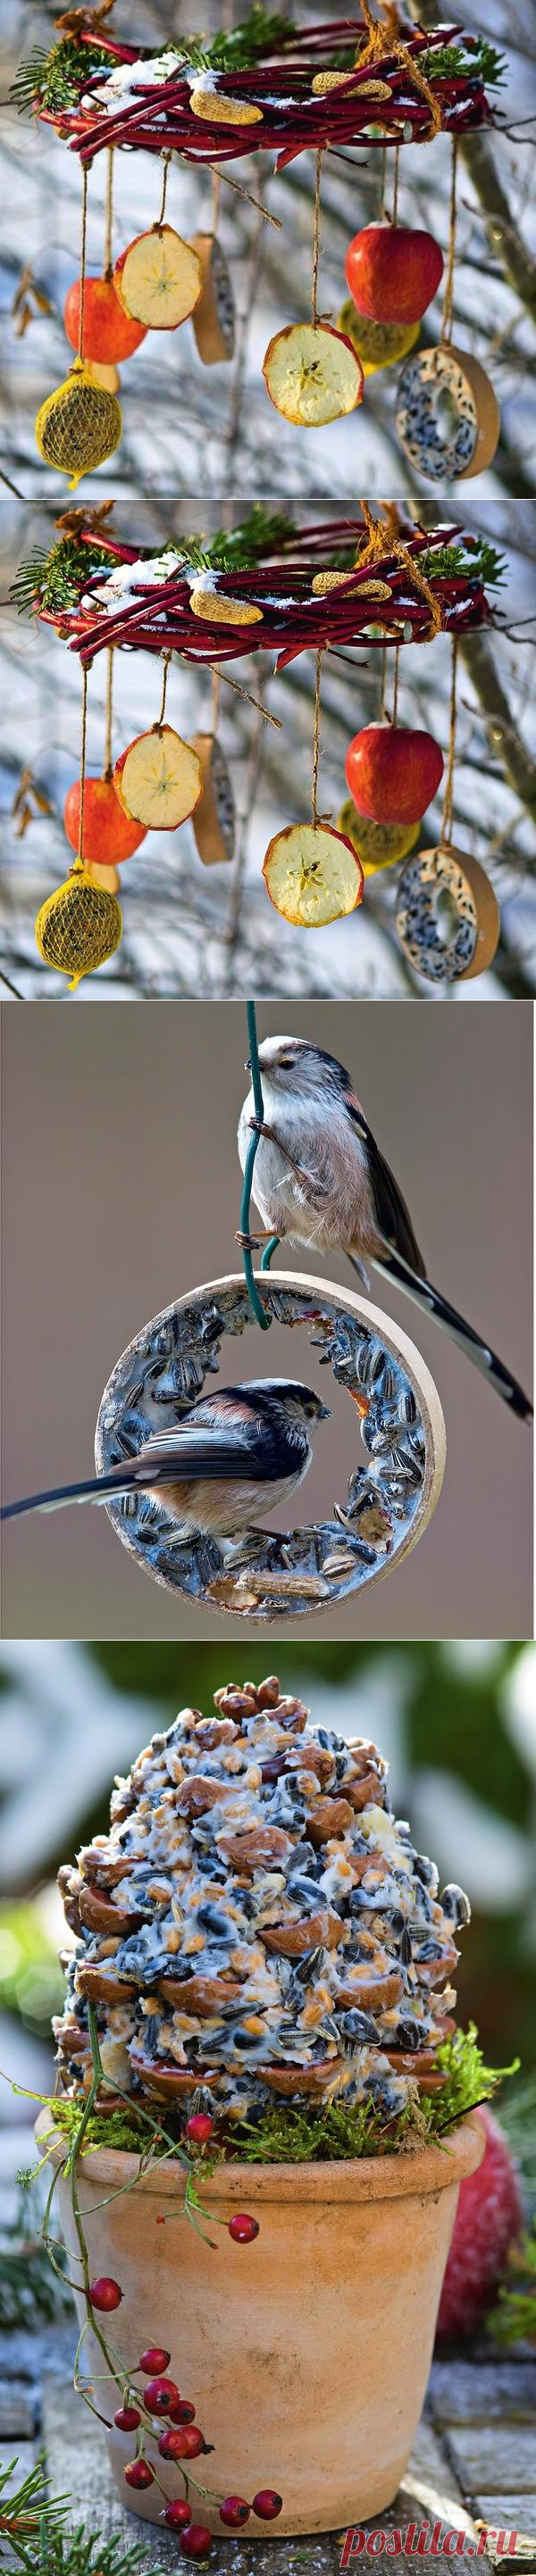 Покормите птиц зимой, или 6 креативных кормушек своими руками
Конец зимы и начало весны — самое голодное время для пернатых. Порадуйте их зернами,...
Читай дальше на сайте. Жми подробнее ➡